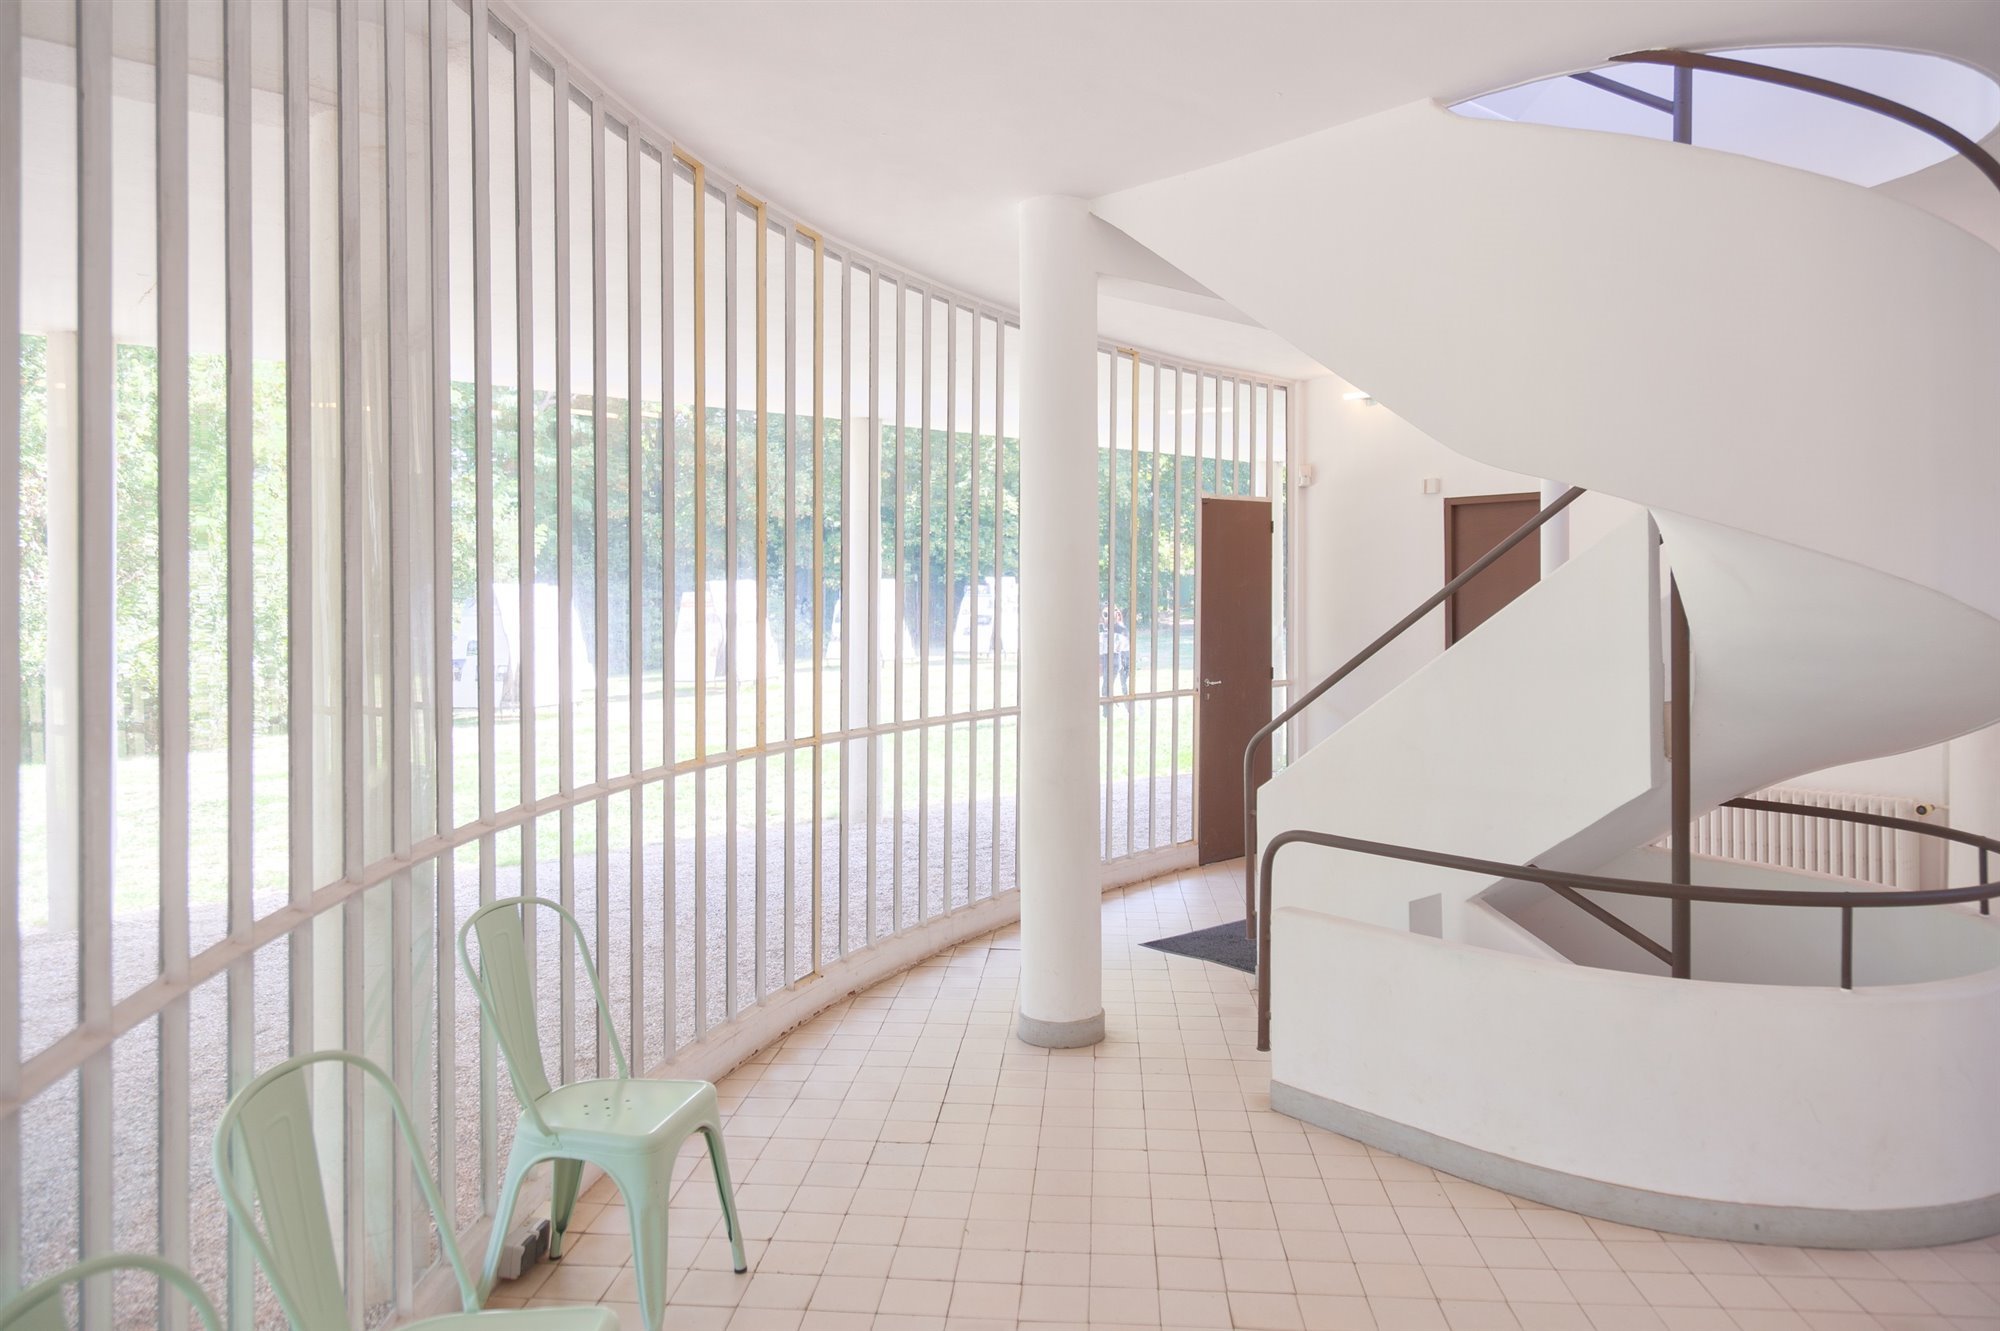 Escalera con sillas de color verde de la Ville Savoye de Le Corbusier en Poissy